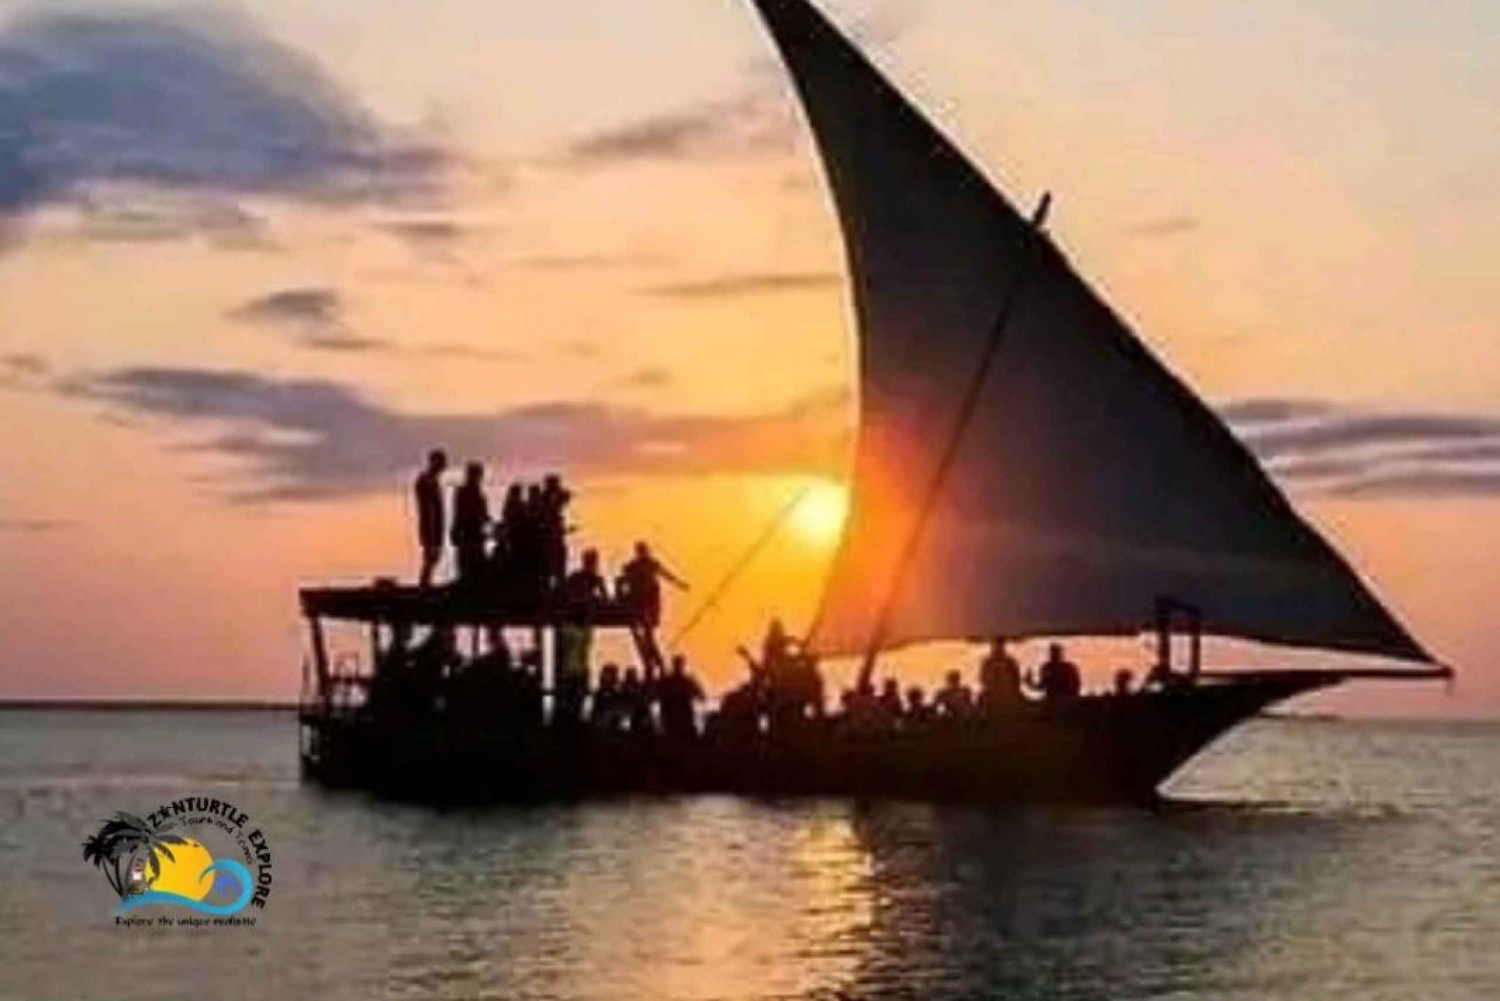 Zanzibar: Rejs dau o zachodzie słońca z Kamiennego Miasta